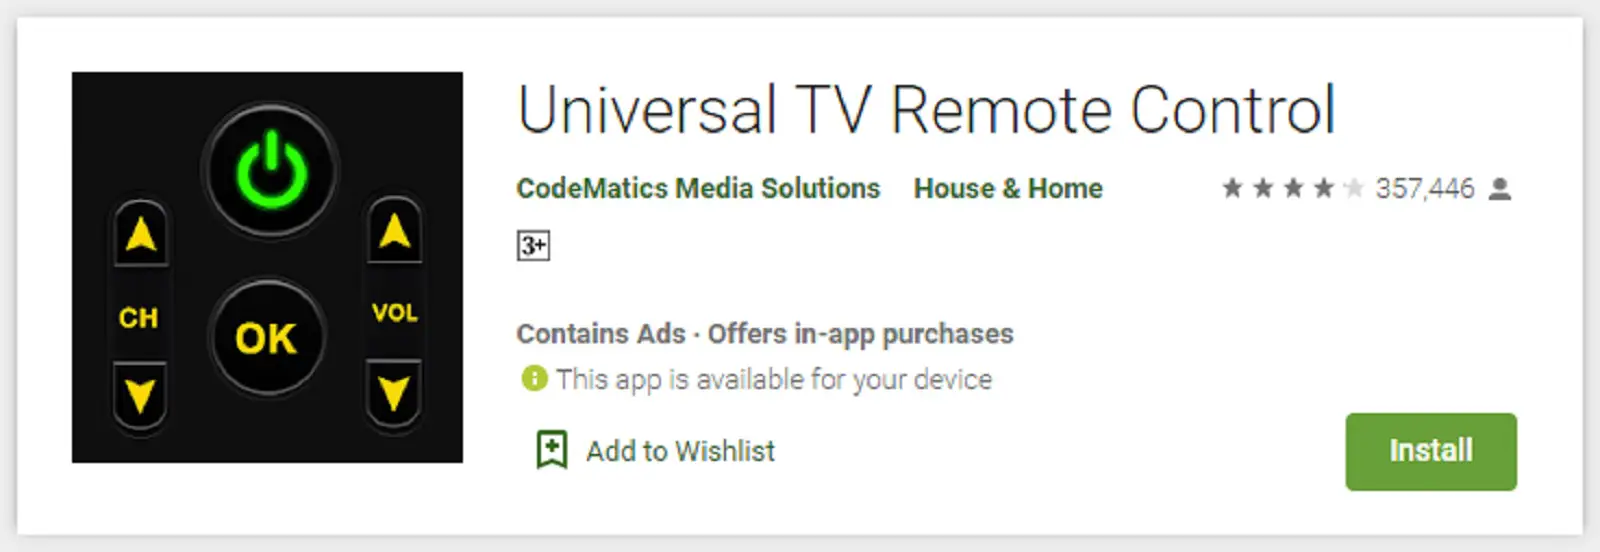 Universal TV Remote Control, Aplikasi Remote TV Tabung Bisa Semua Merk